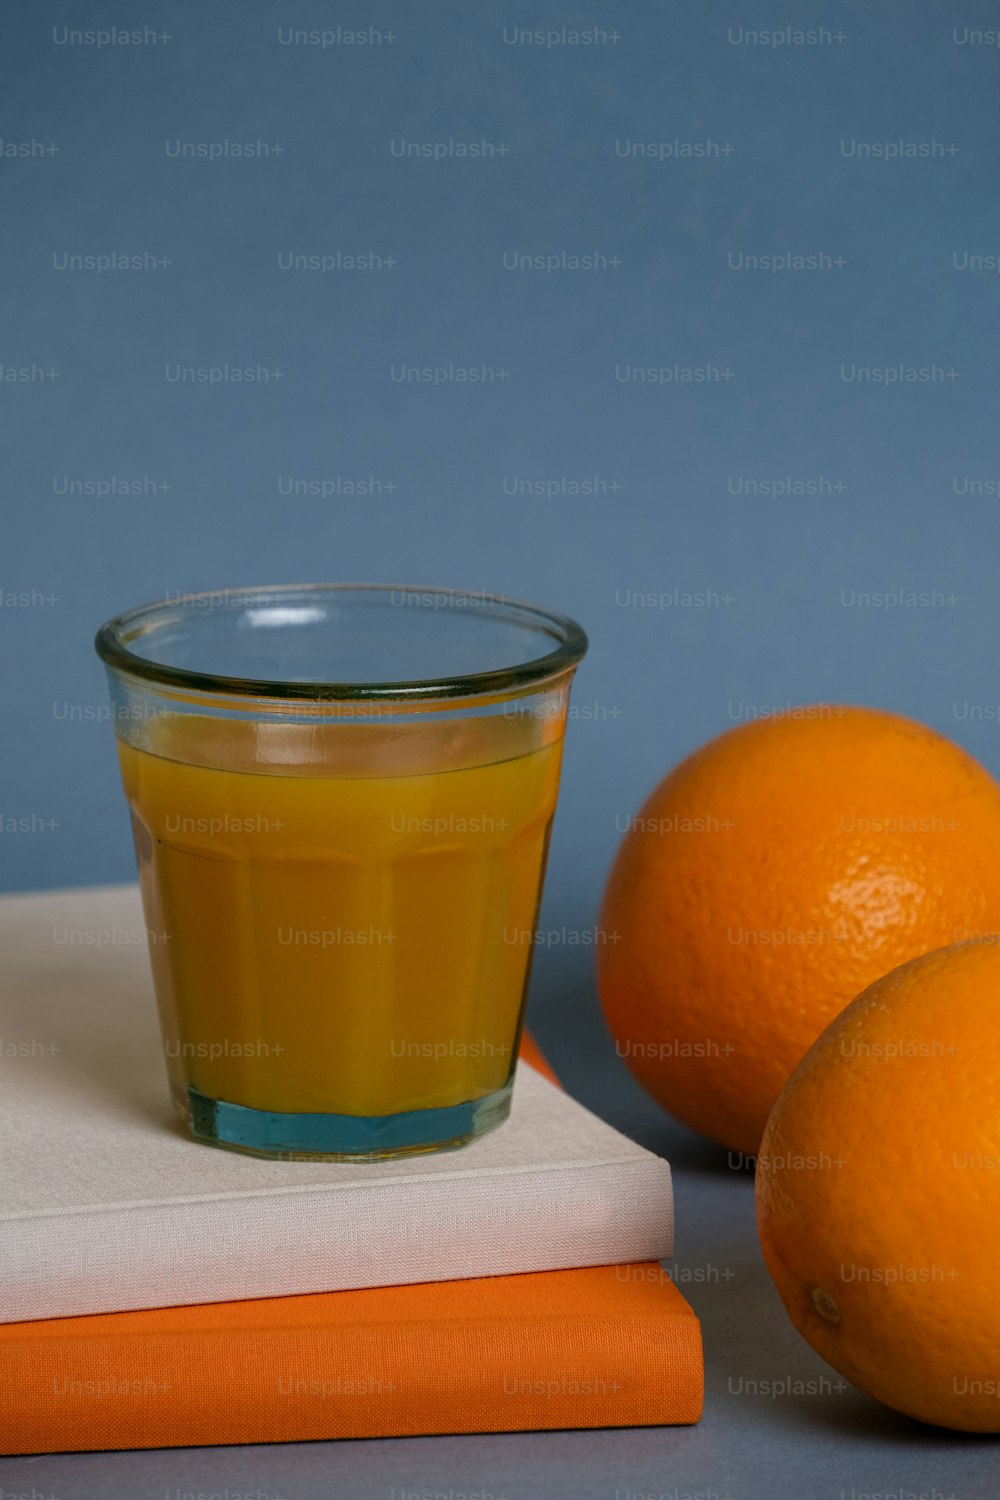 오렌지 세 개 옆에 오렌지 주스 한 잔